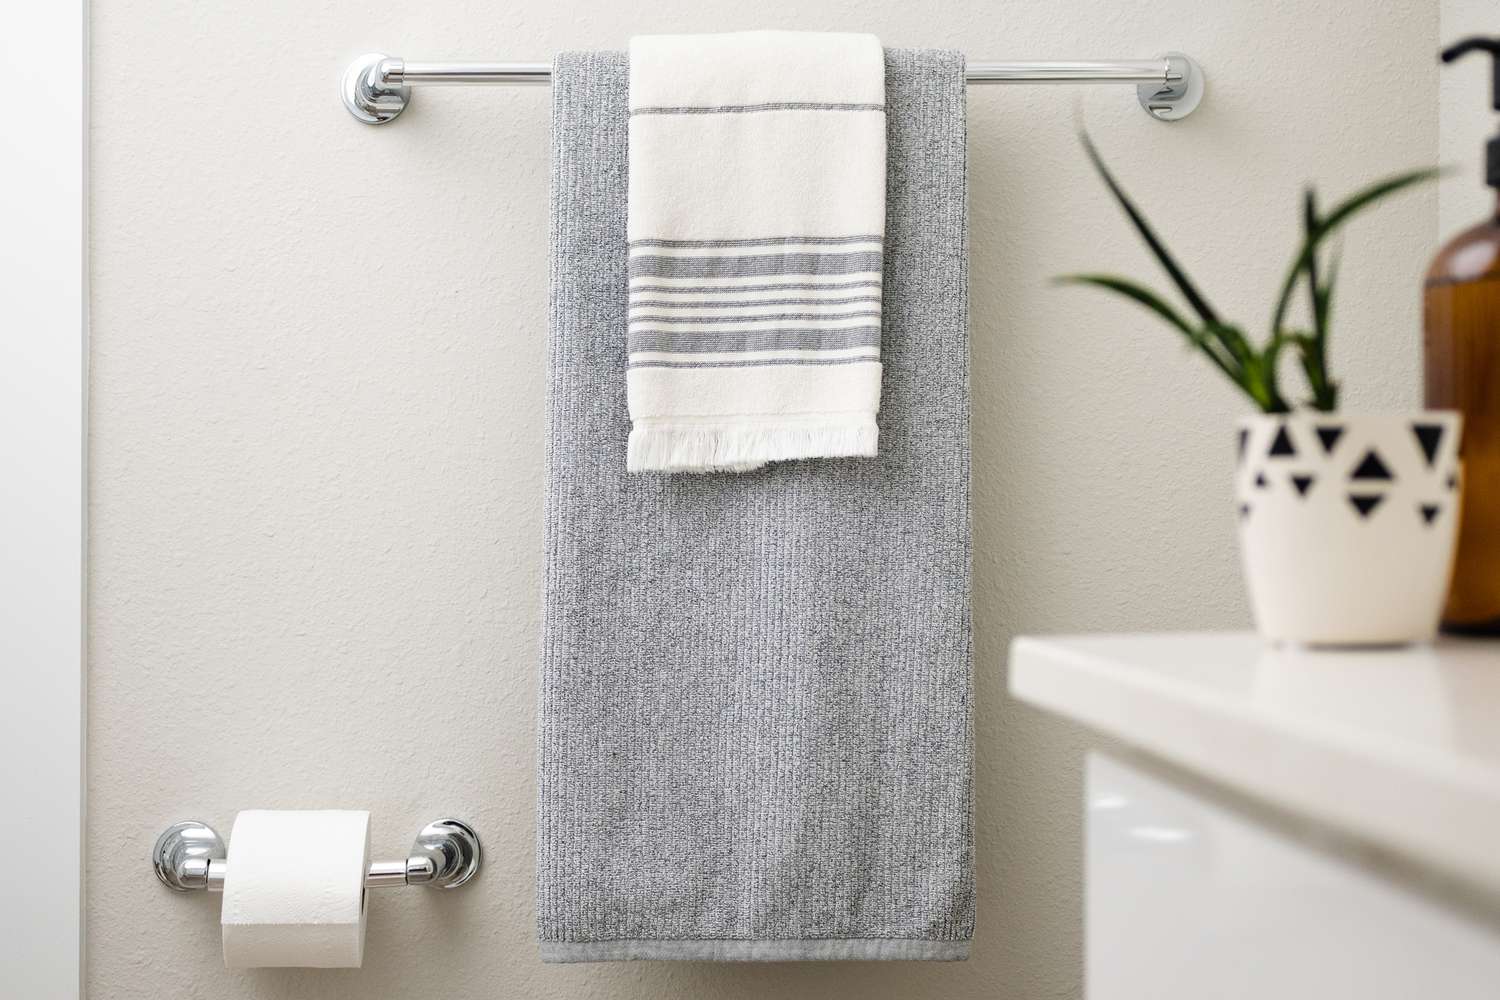 Comment suspendre les serviettes de salle de bains pour qu’elles soient toujours belles